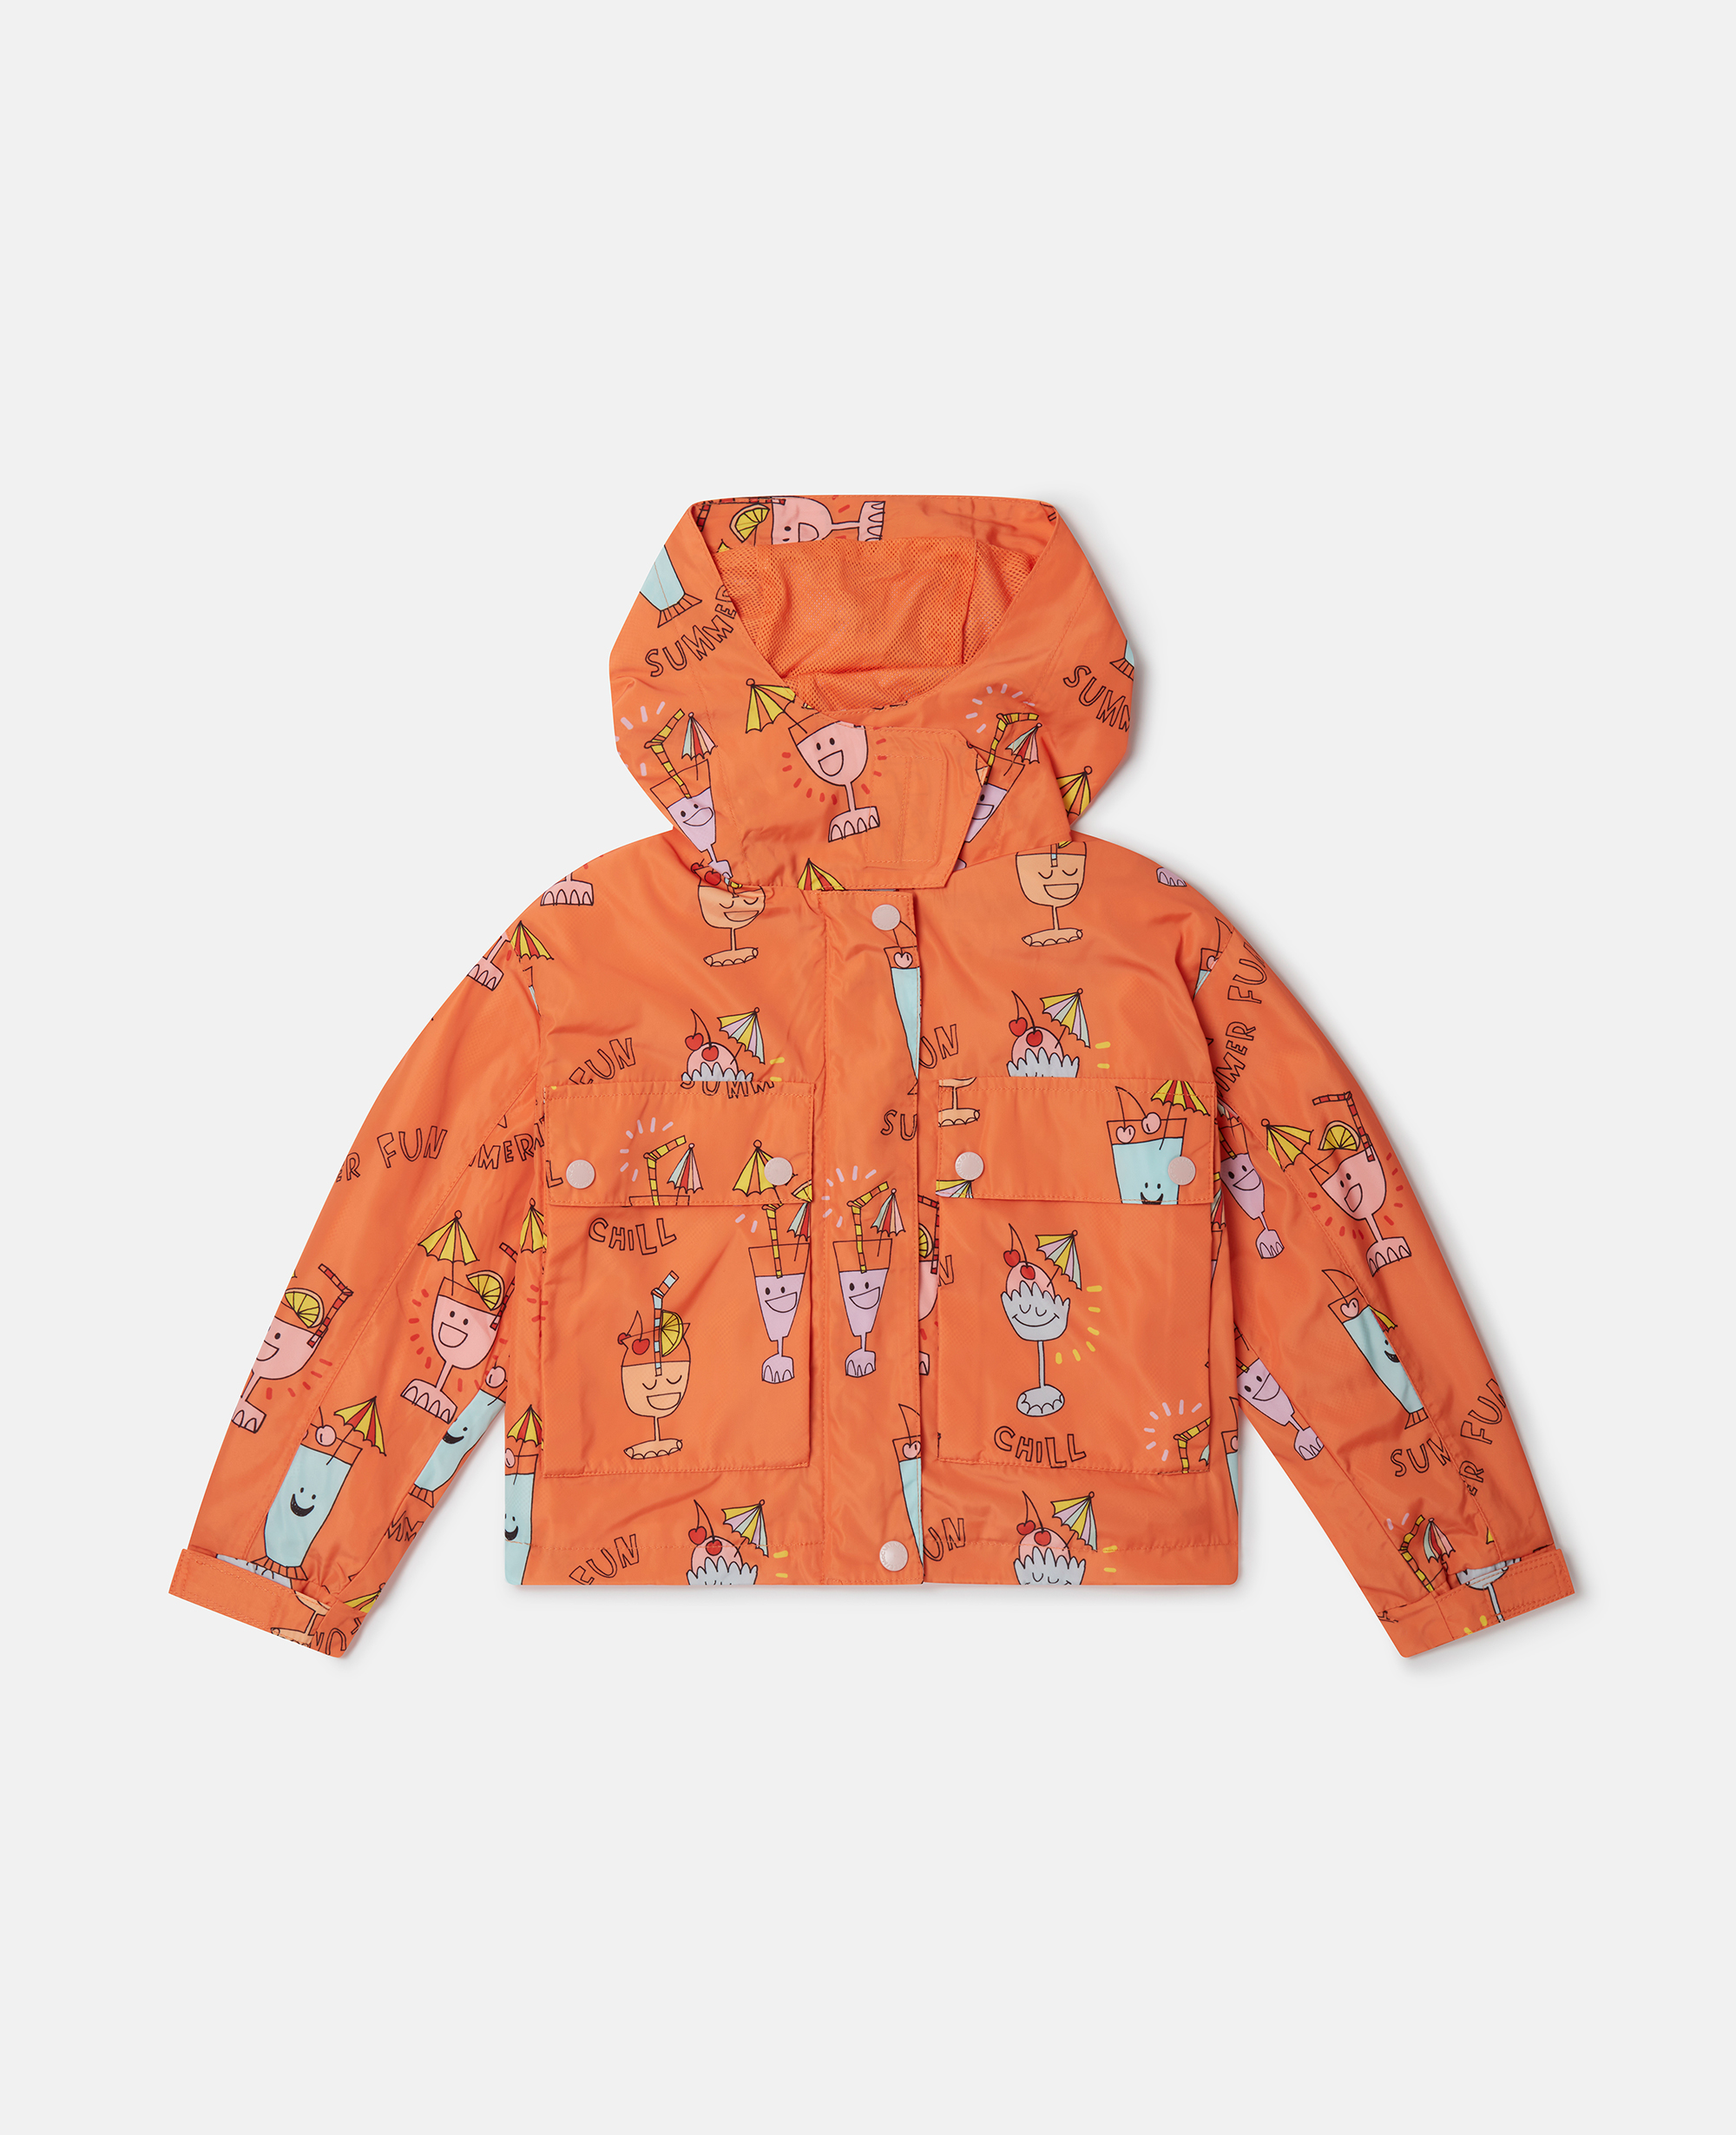 Stella Mccartney Kids' Summer Doodles Print Hooded Jacket In Orange